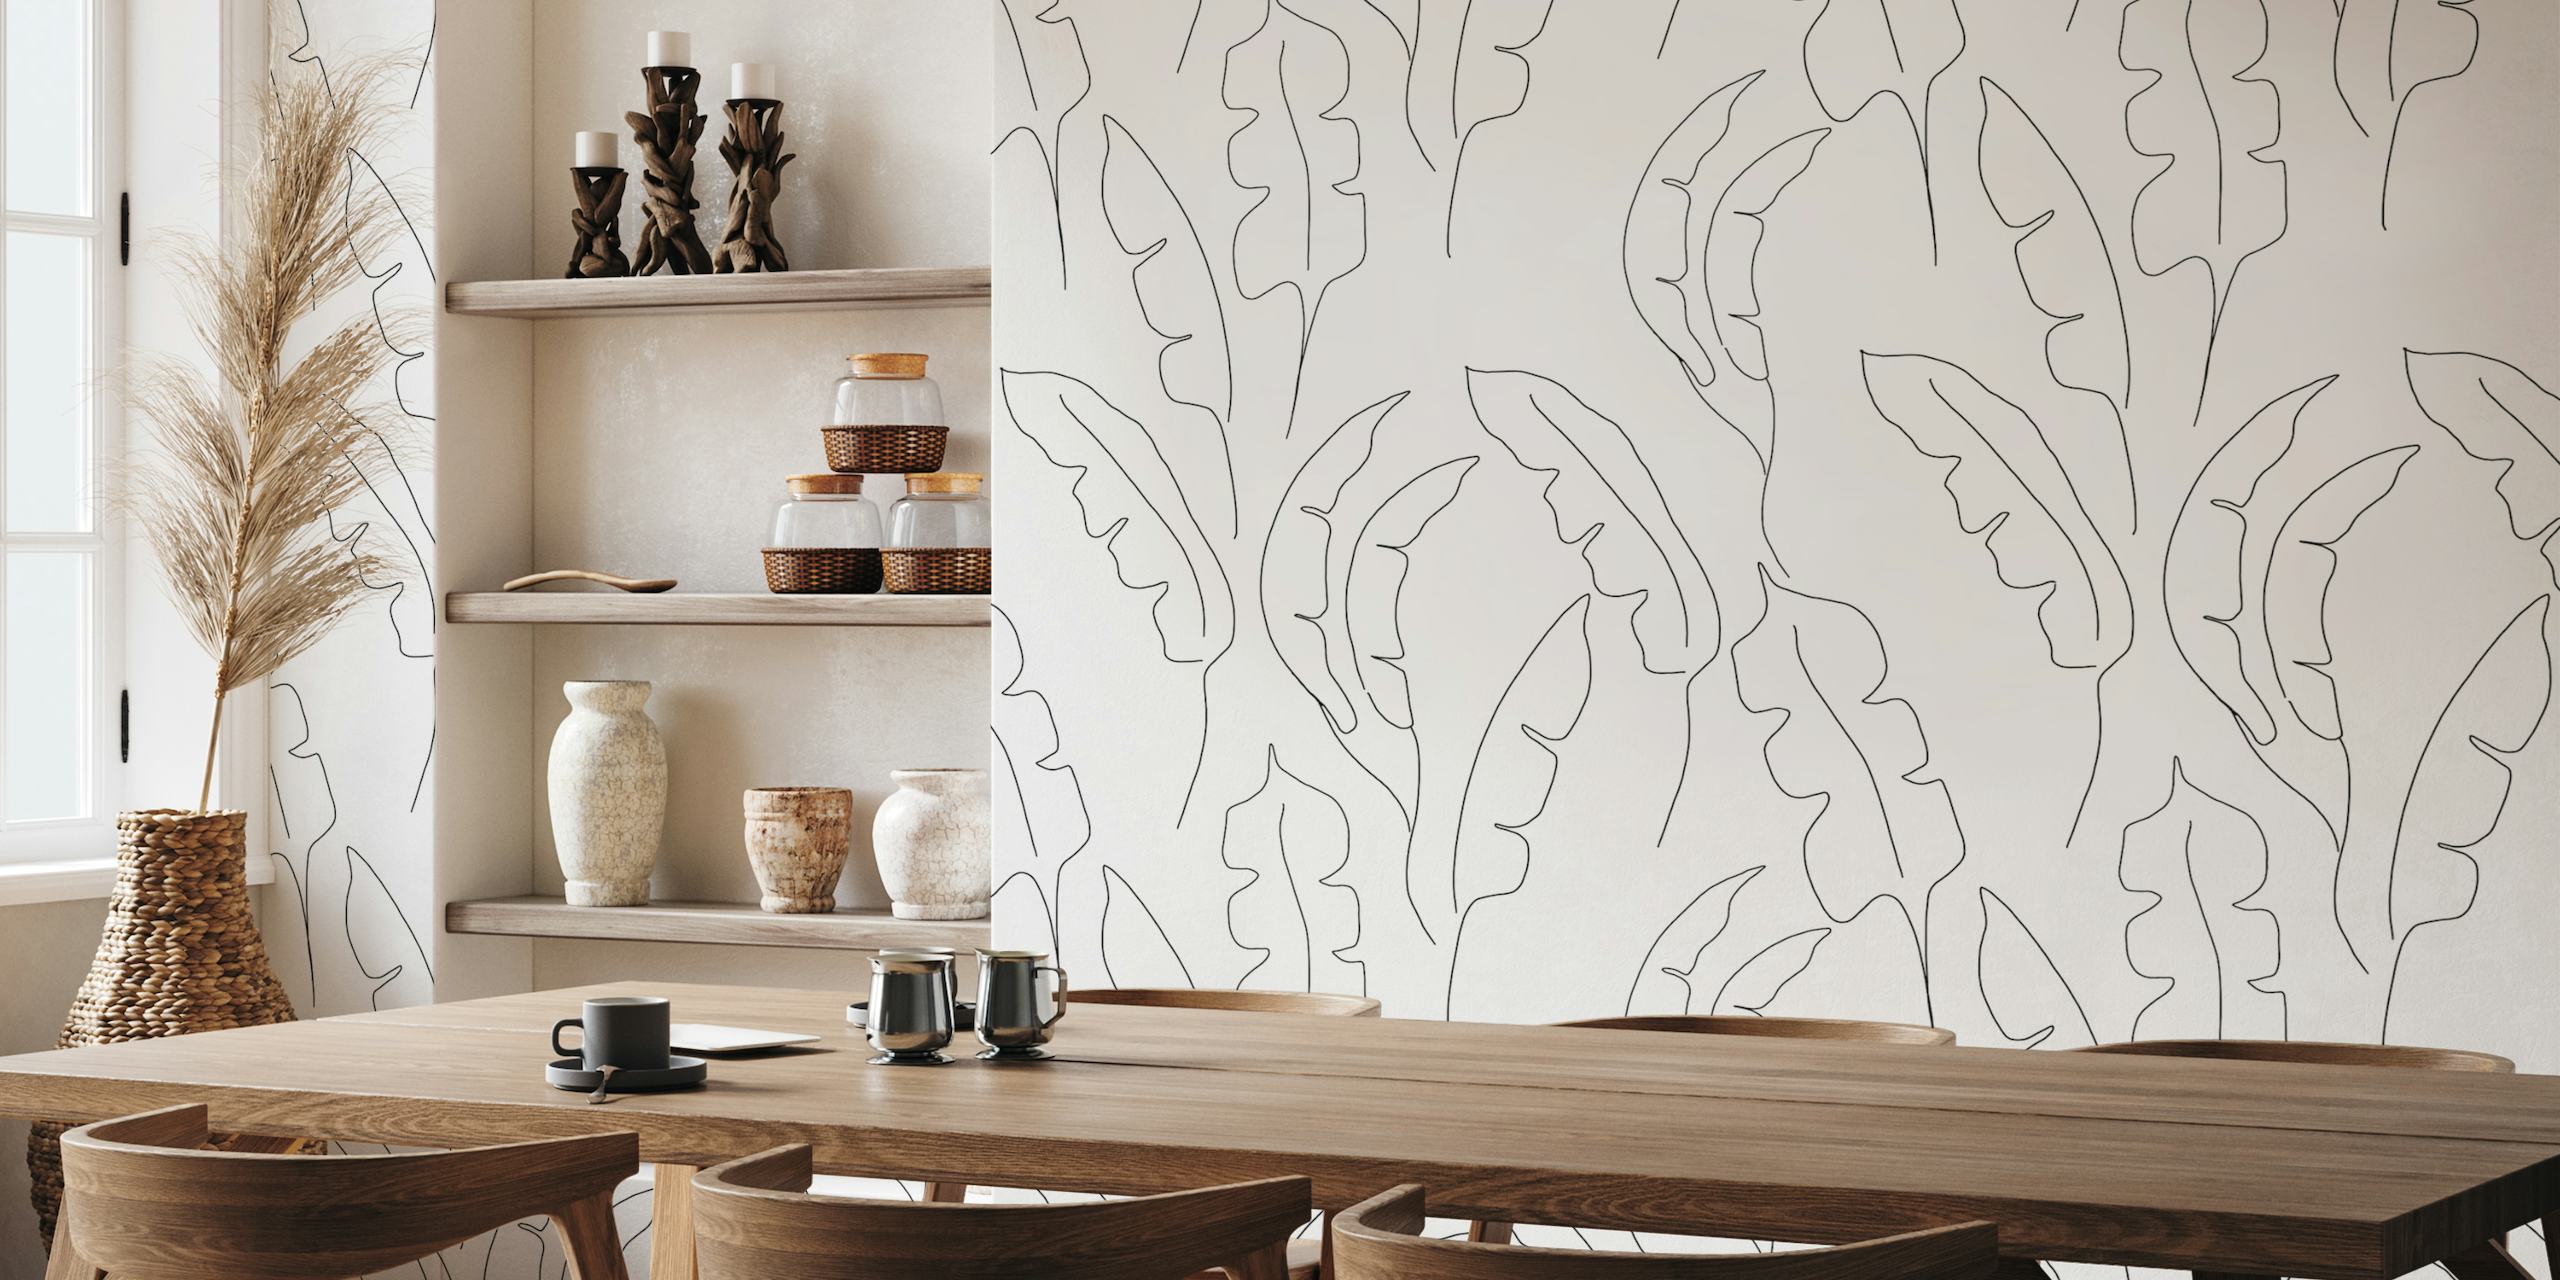 Zeer fijne muurschildering met bananenbladerenpatroon voor elegante interieurs